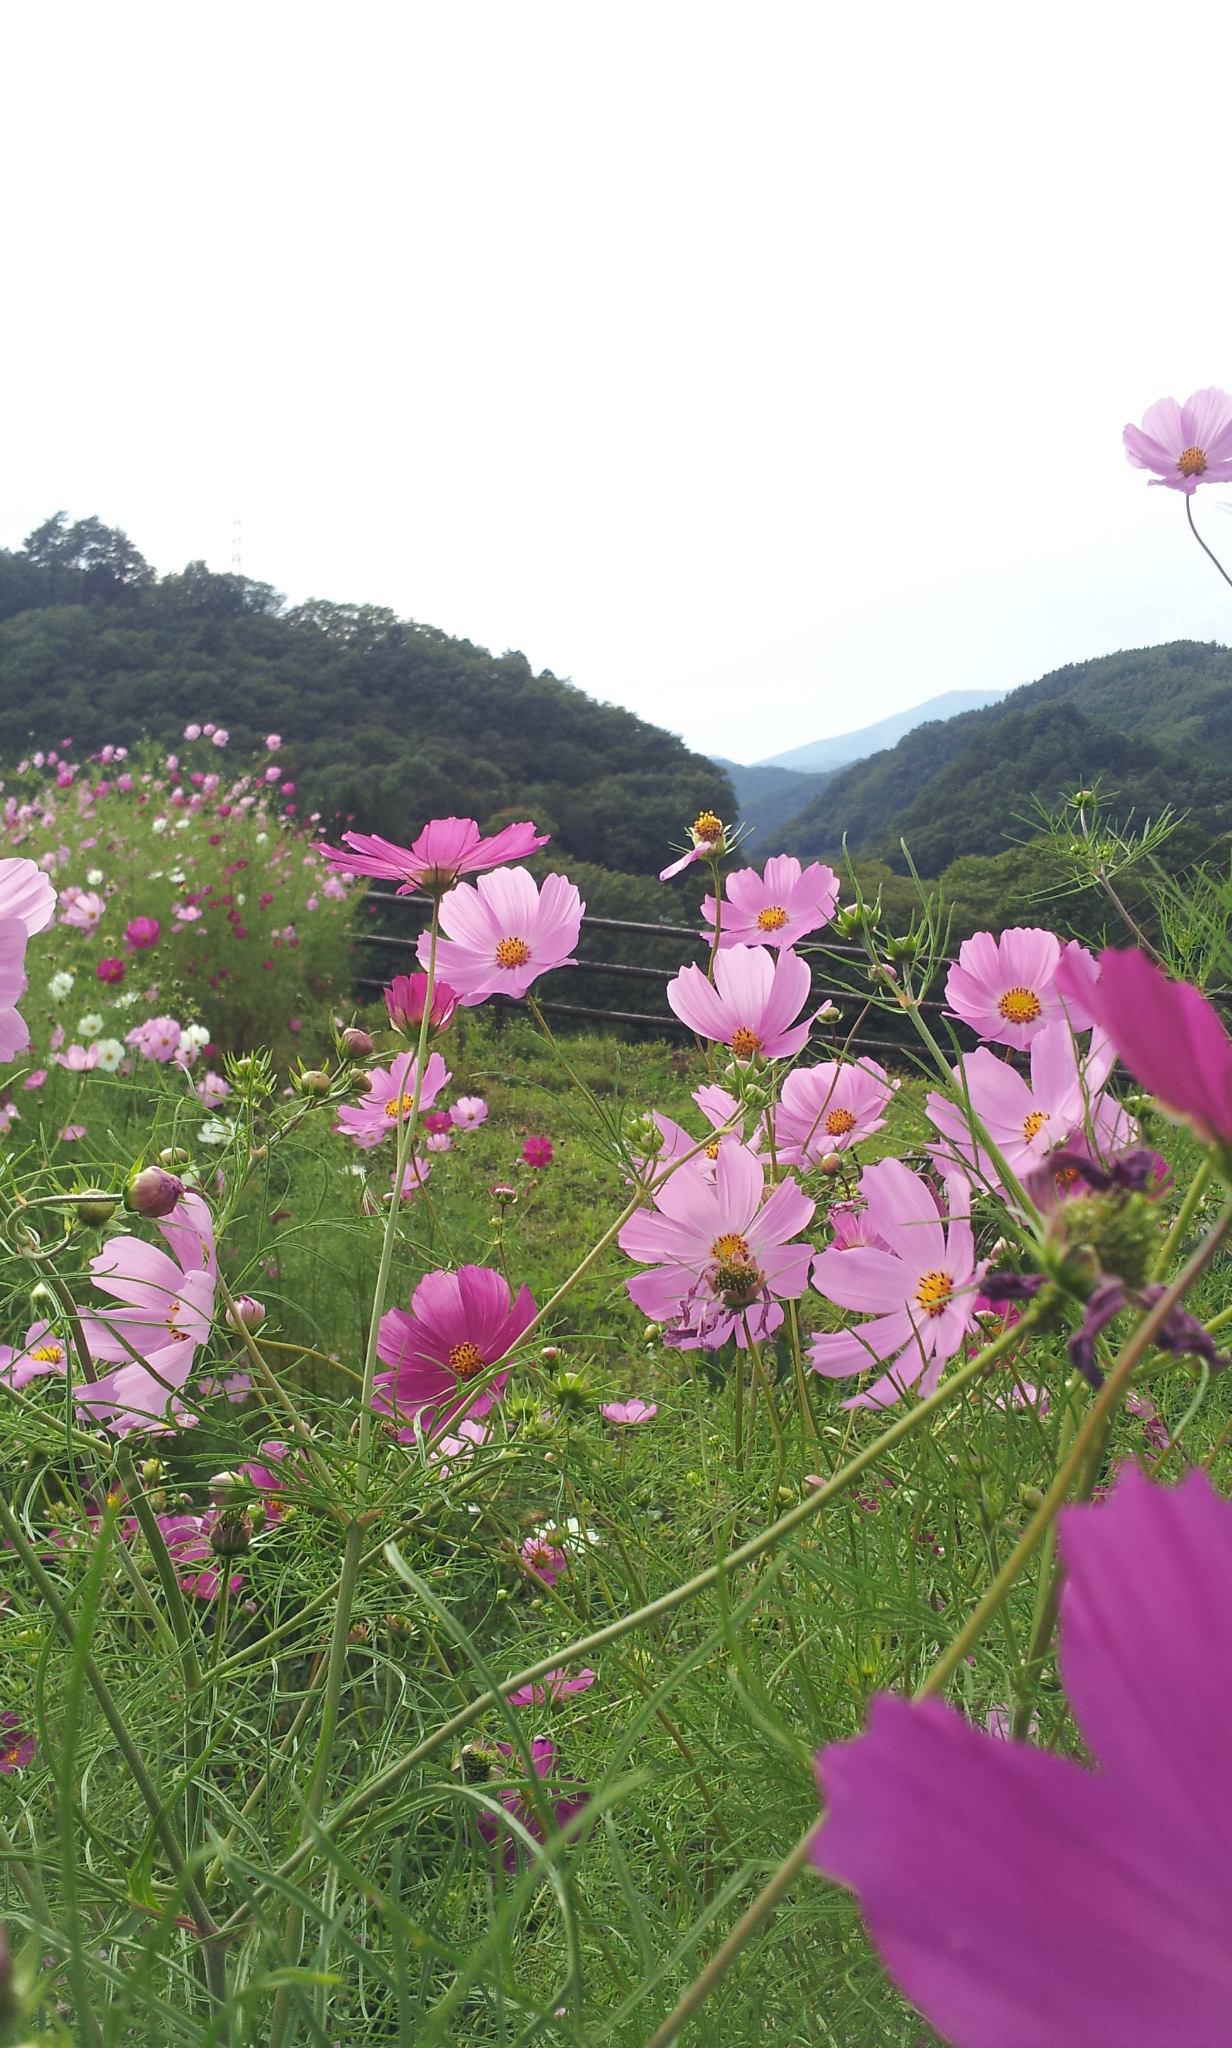 http://www.hakusekikan.co.jp/mt/images/2014-09-18%2015.16.29.jpg